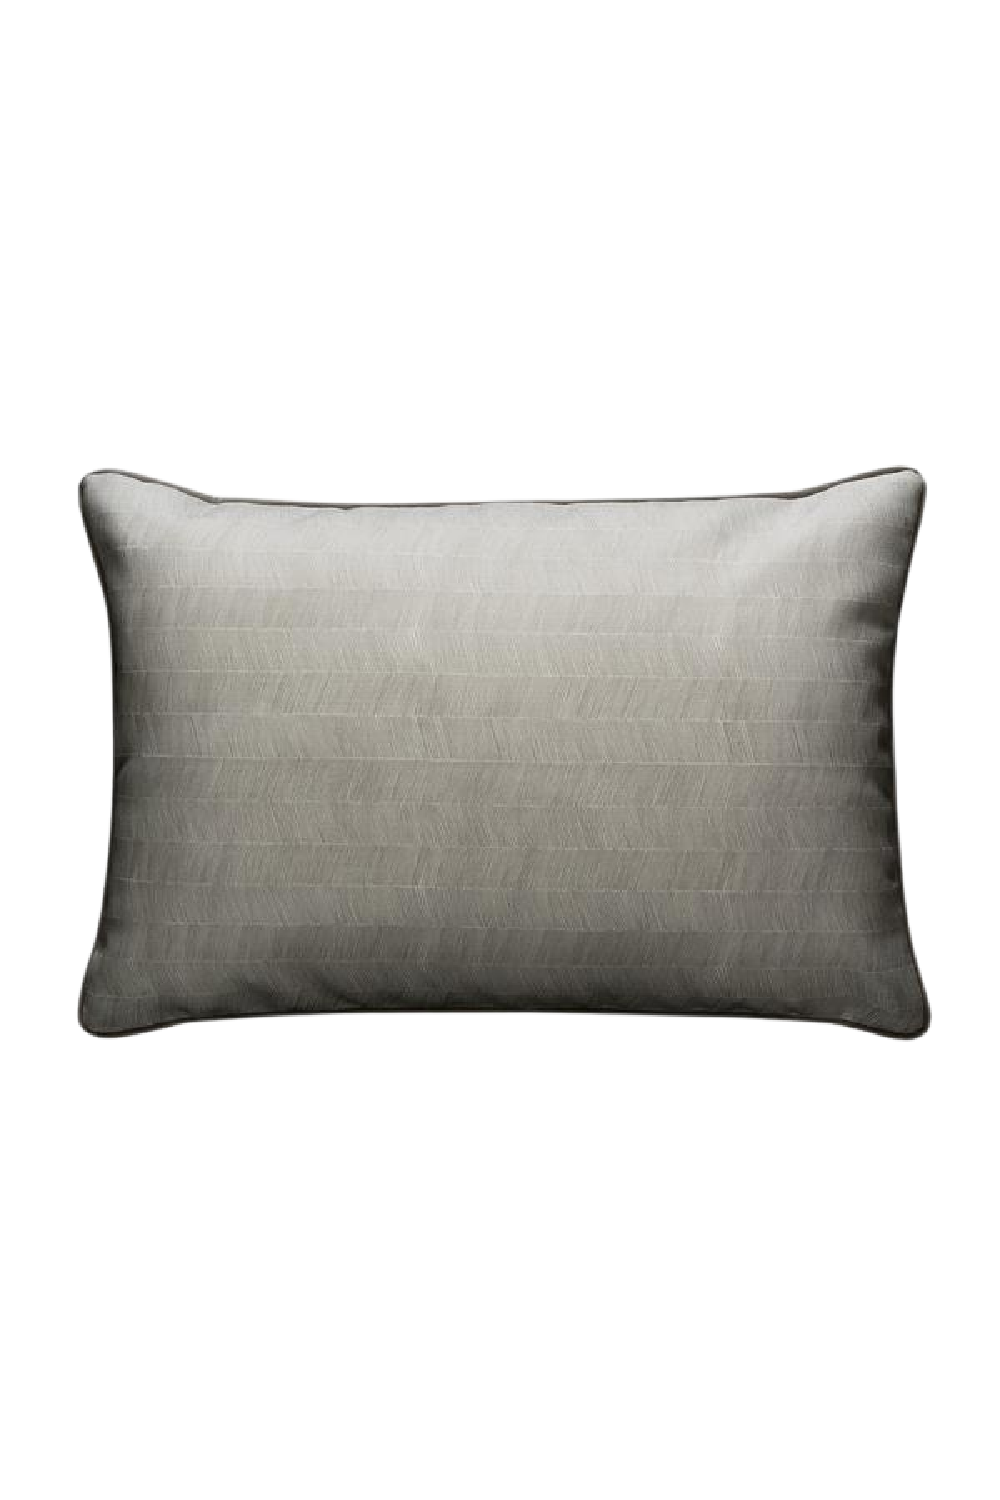 Herringbone Outdoor Cushion | Andrew Martin Delta | OROA